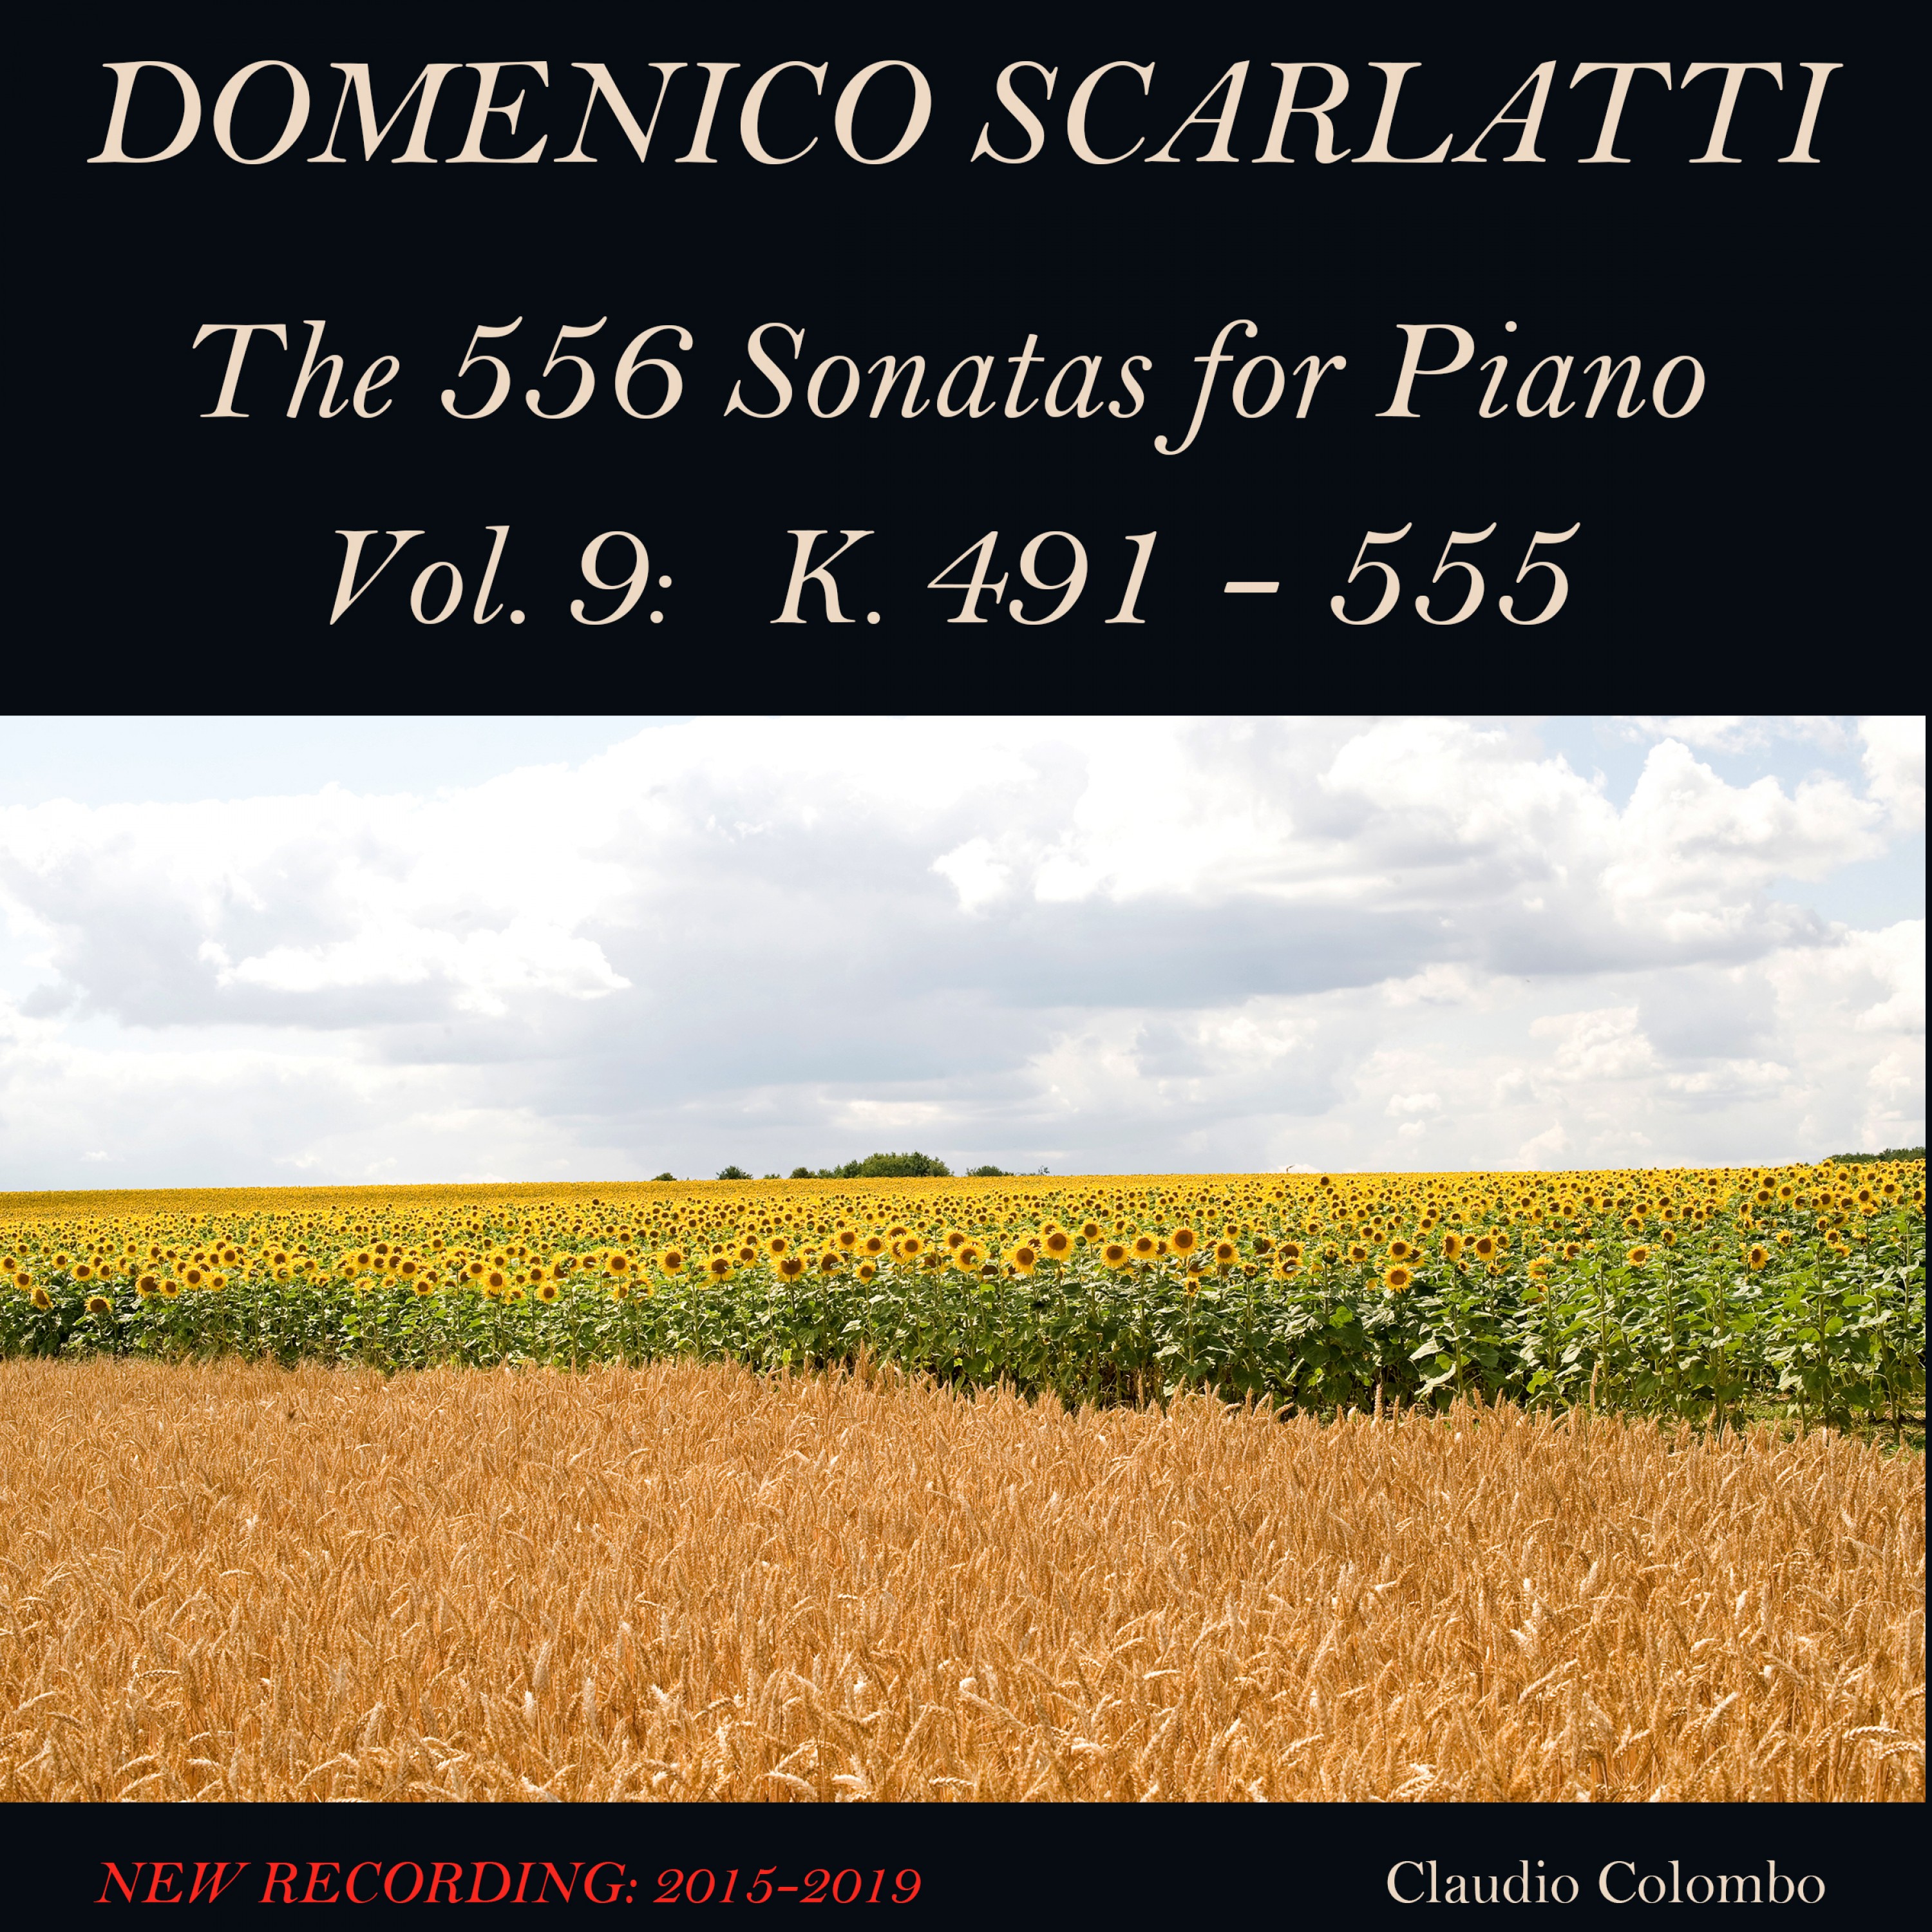 Domenico Scarlatti: The 556 Sonatas for Piano - Vol. 9: K. 491 - 555